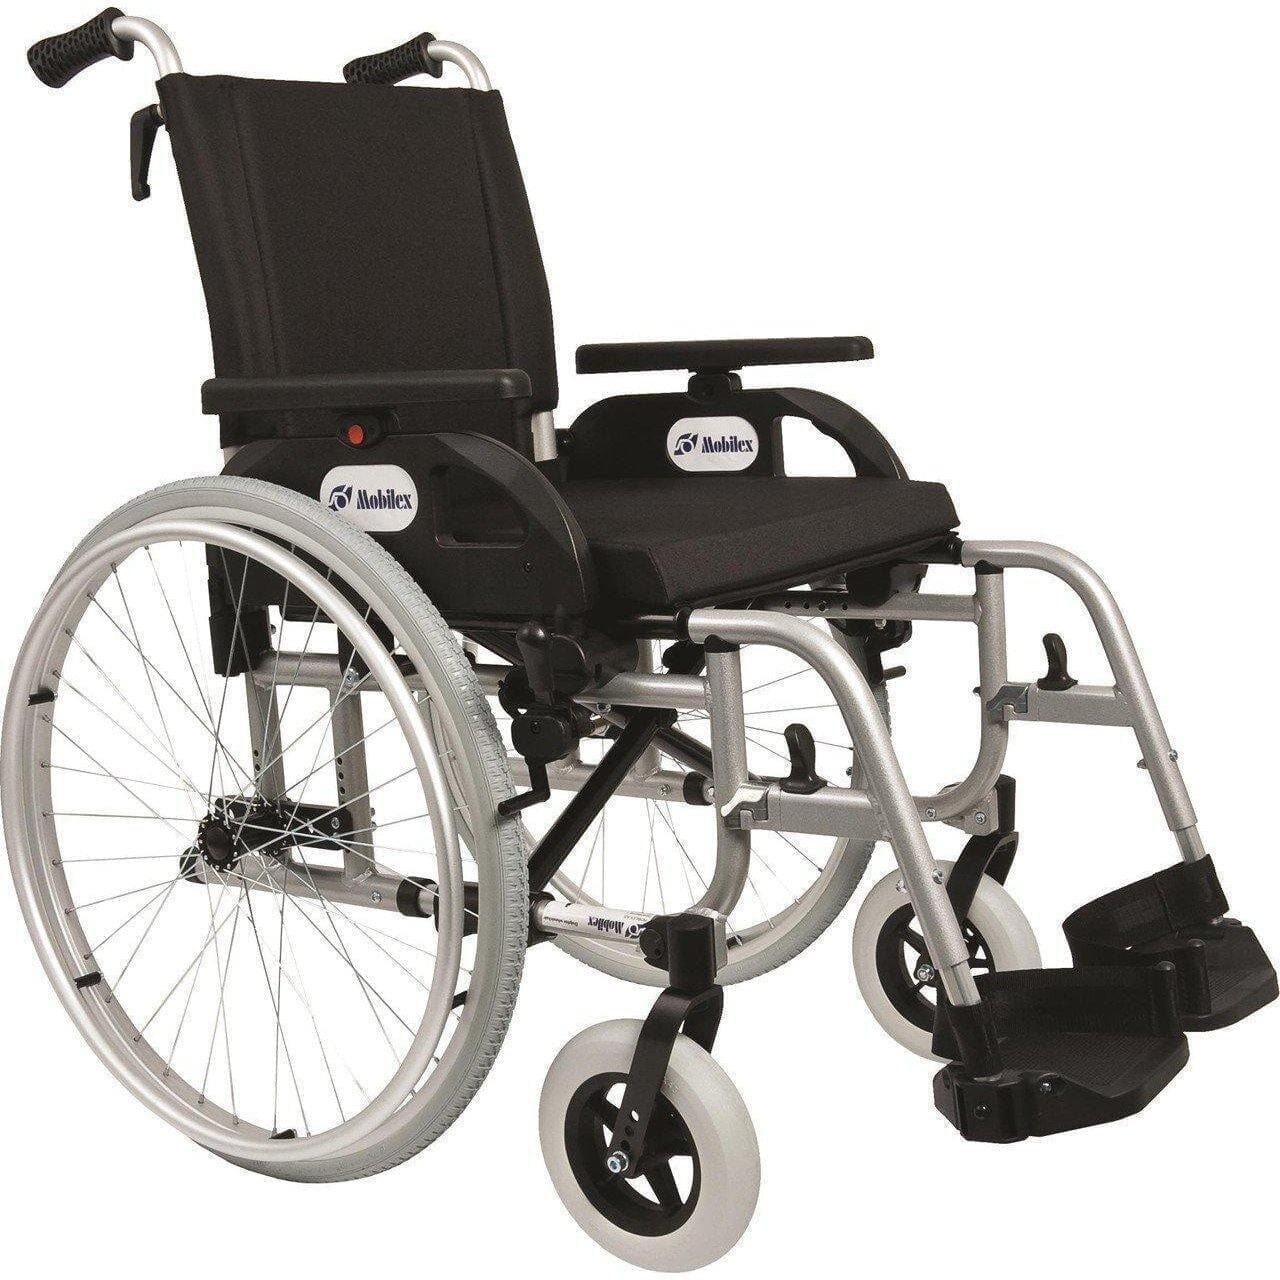 Billede af DOLPHIN -Letvægts kørestol. Luksus model. 4 slags sædebredder. 2 typer, 48 cm.